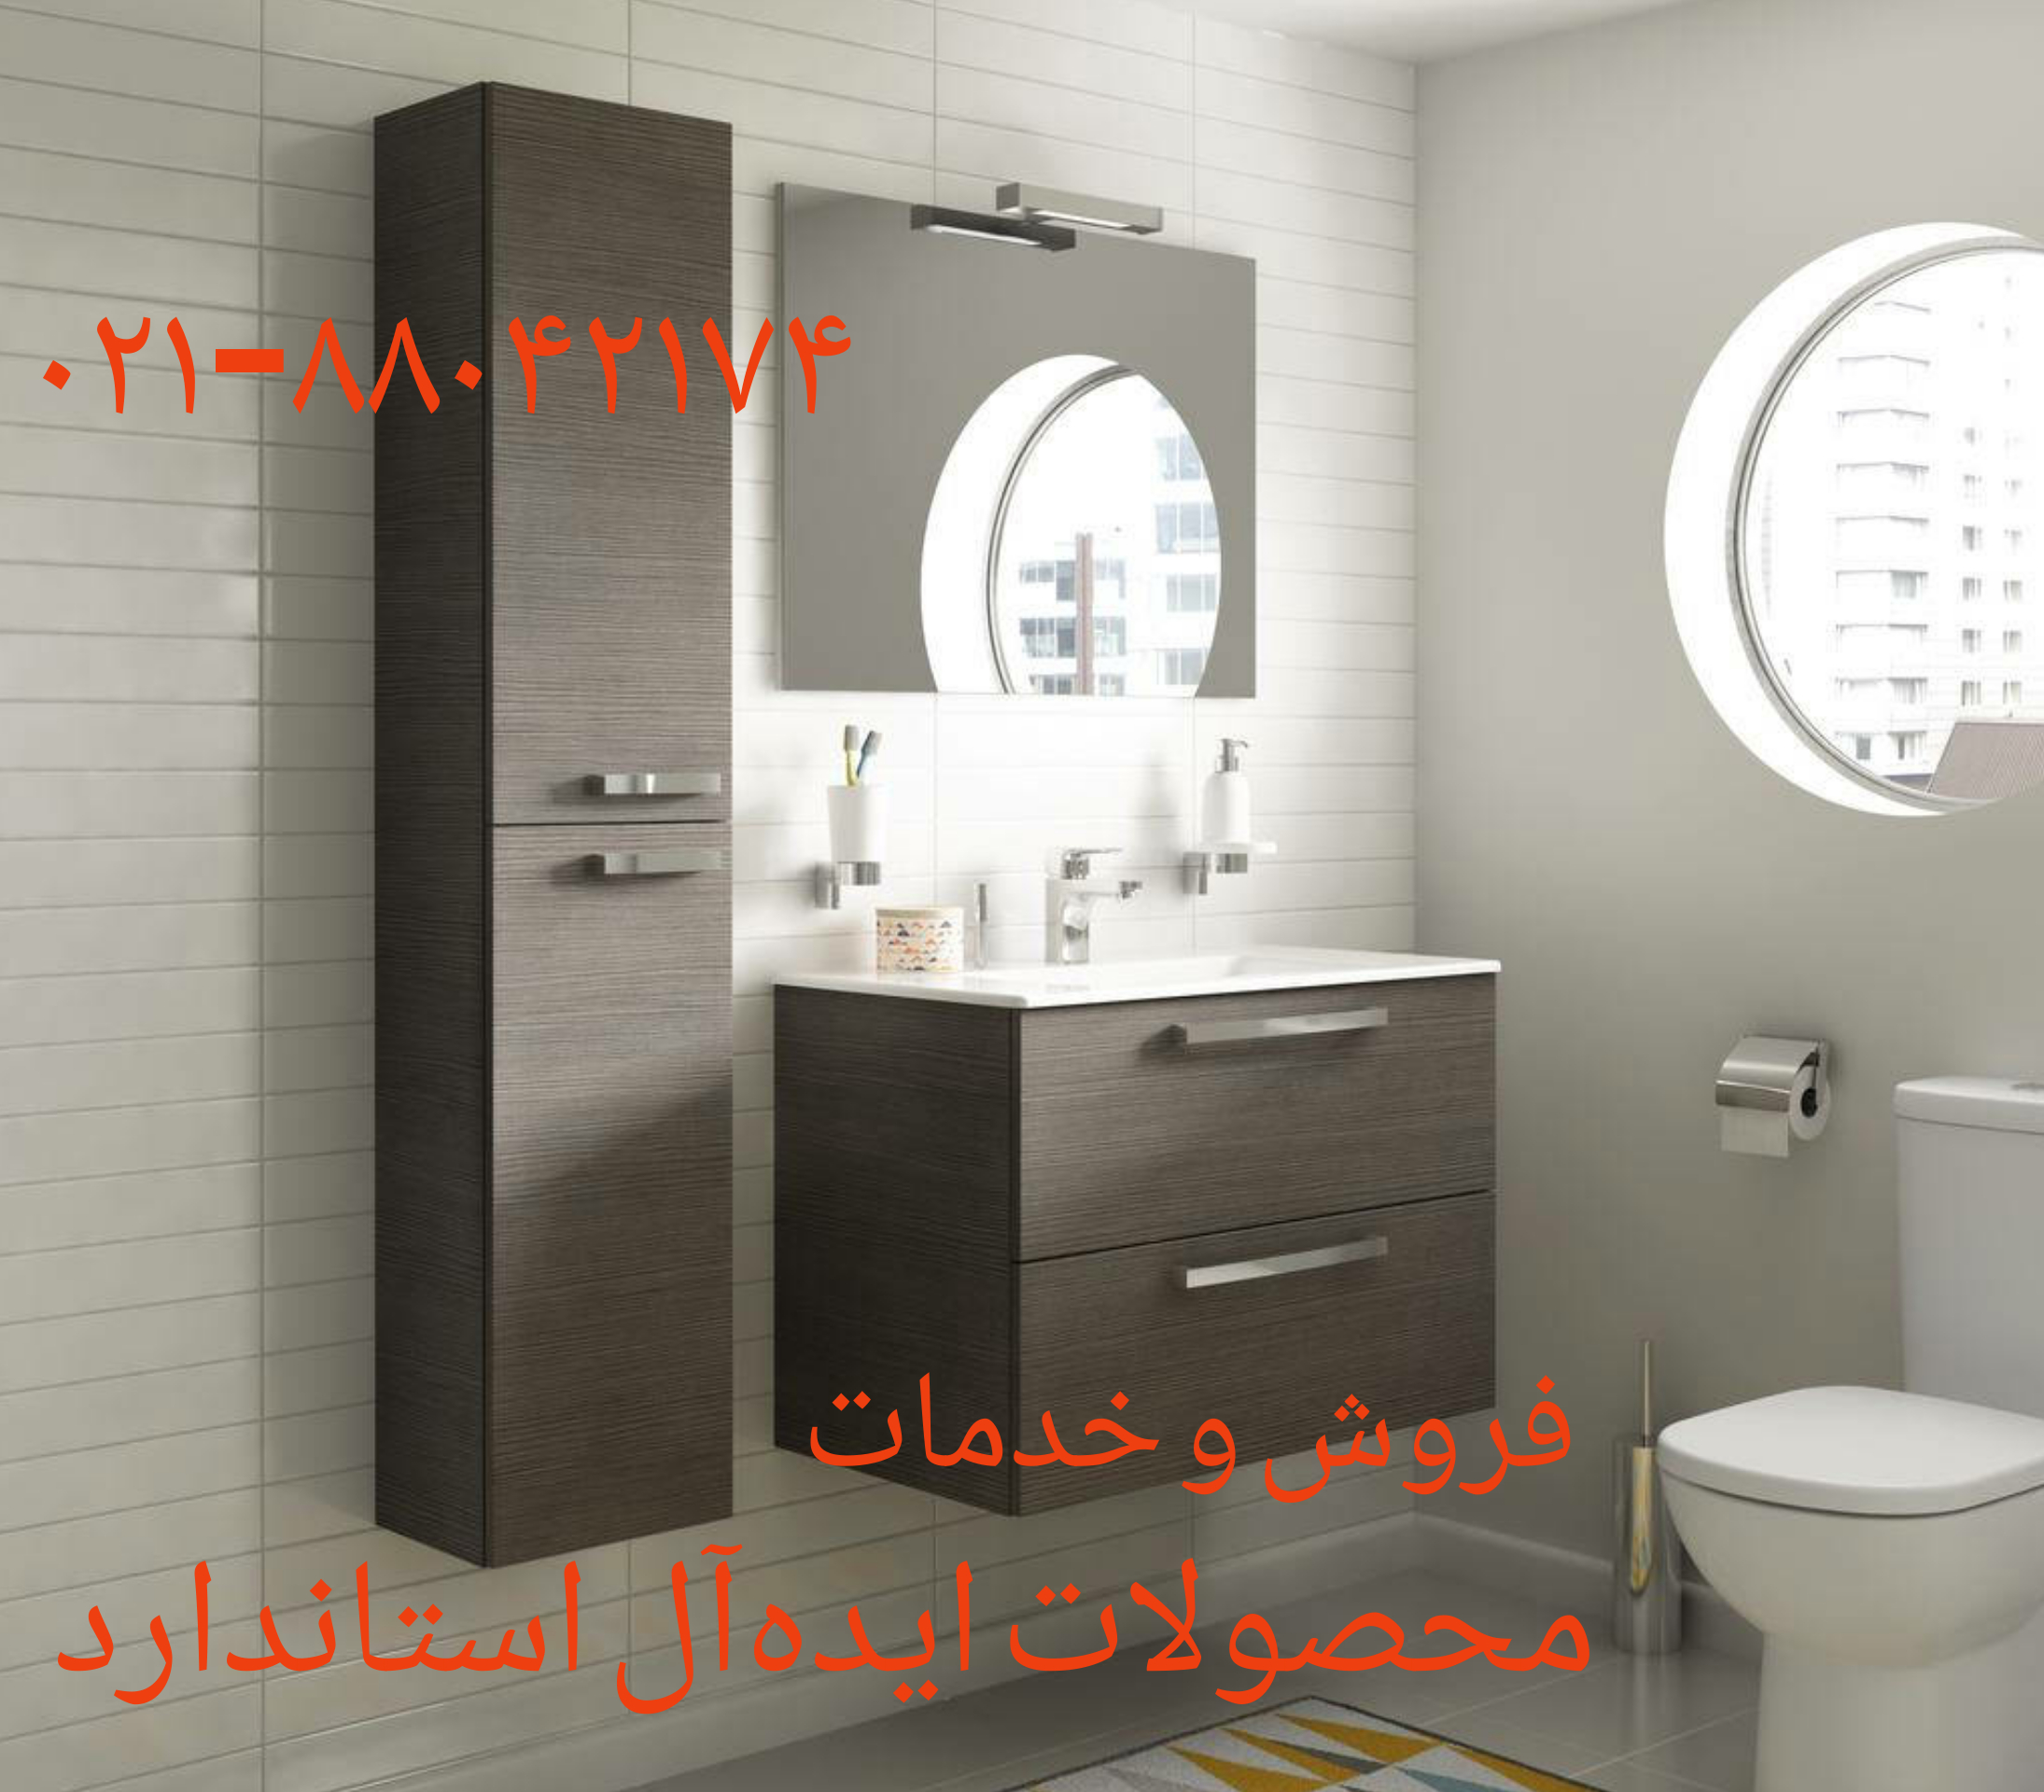 تعمیر و طراحی و ساخت کابینت حمام ونک 09121507825// طراحی کابینت آشپزخانه و حمام